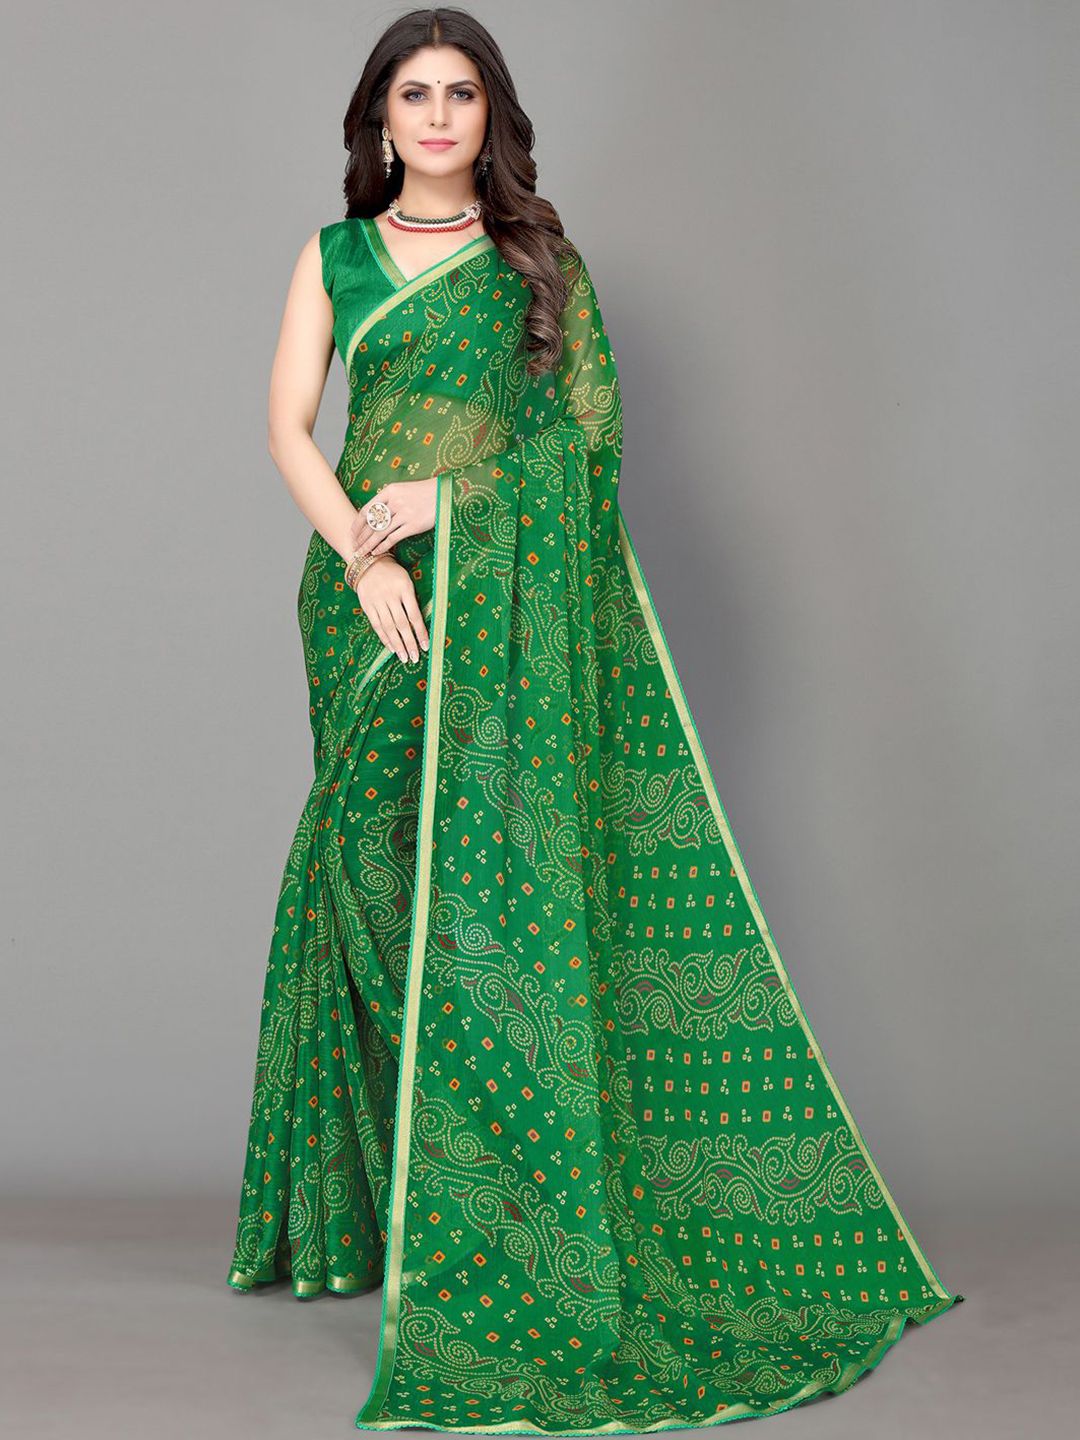 KALINI Green & White Bandhani Zari Bandhani Saree Price in India